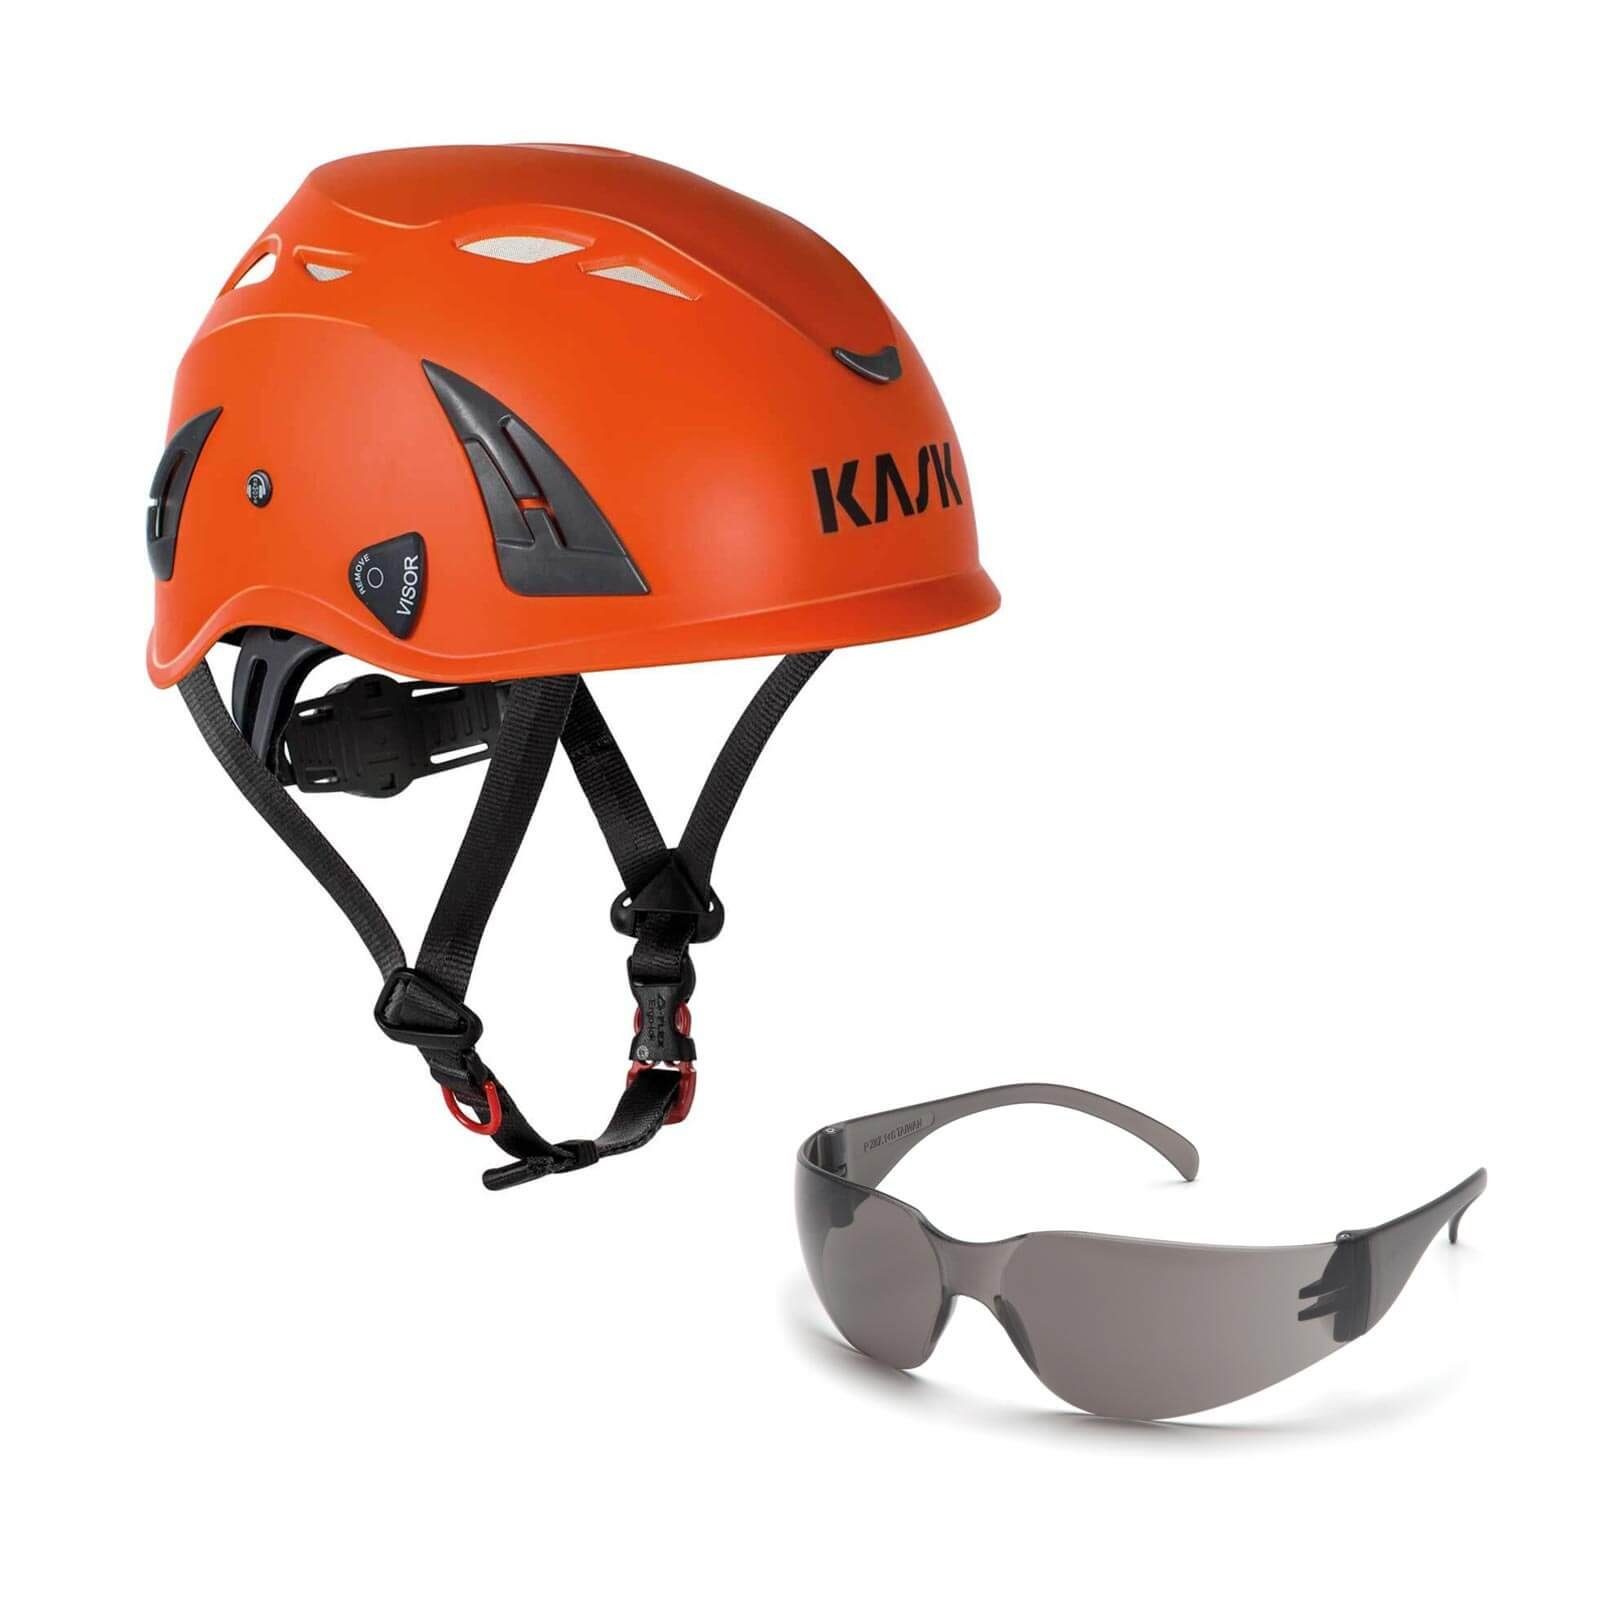 Bergsteigerhelm, Industriekletterhelm + klar Schutzhelm Kask AQ Schutzbrille orange Plasma